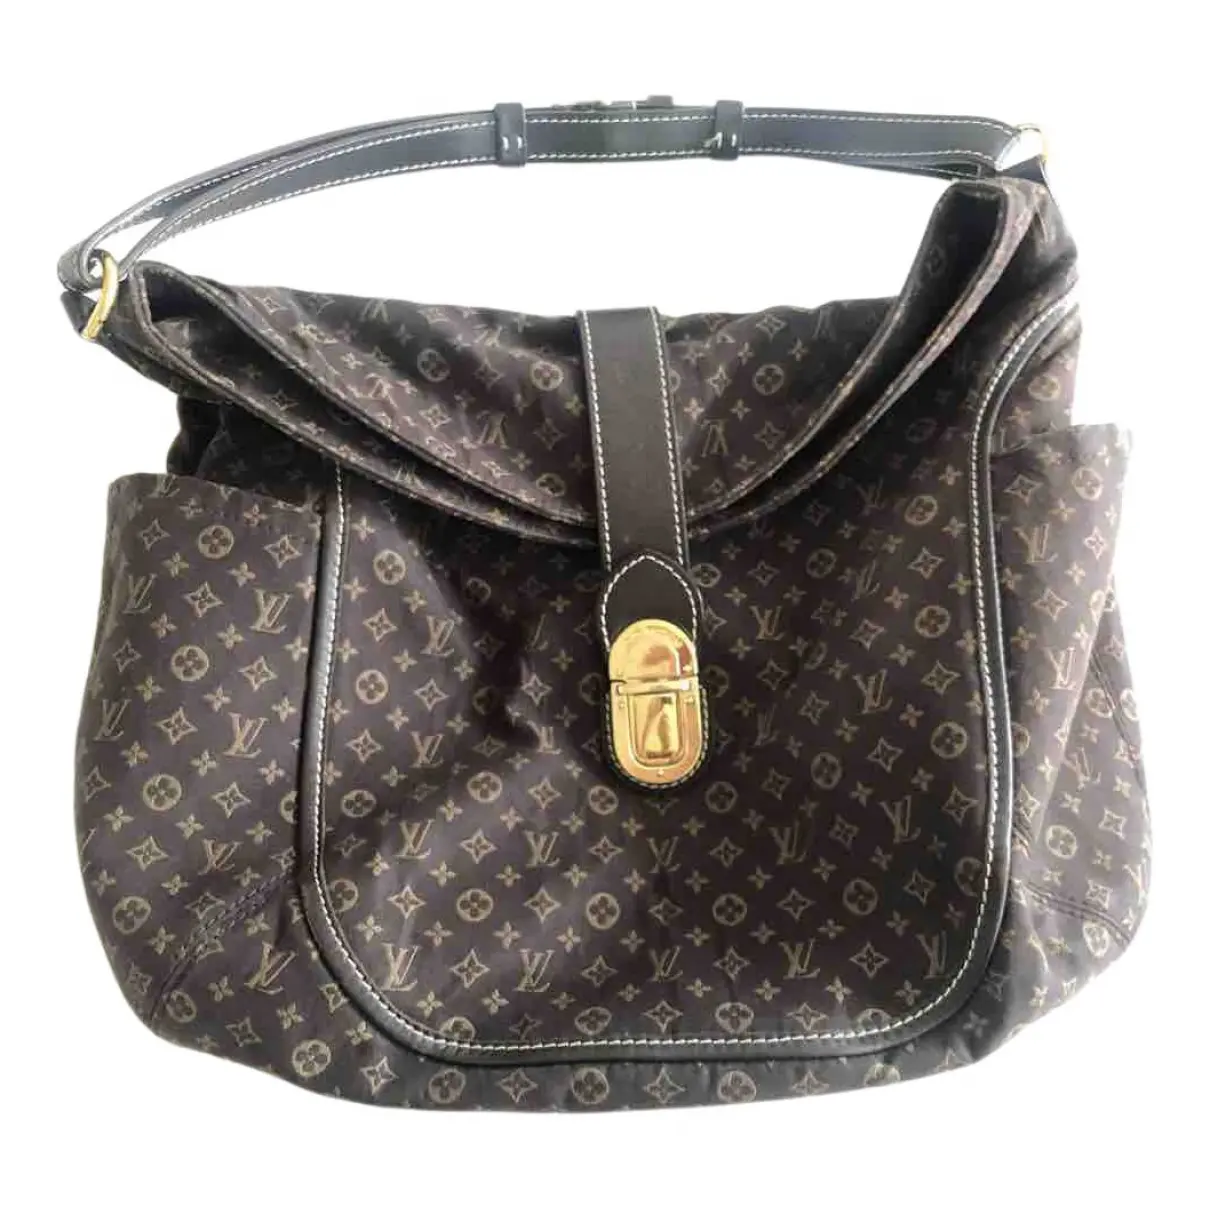 Idylle cloth handbag Louis Vuitton